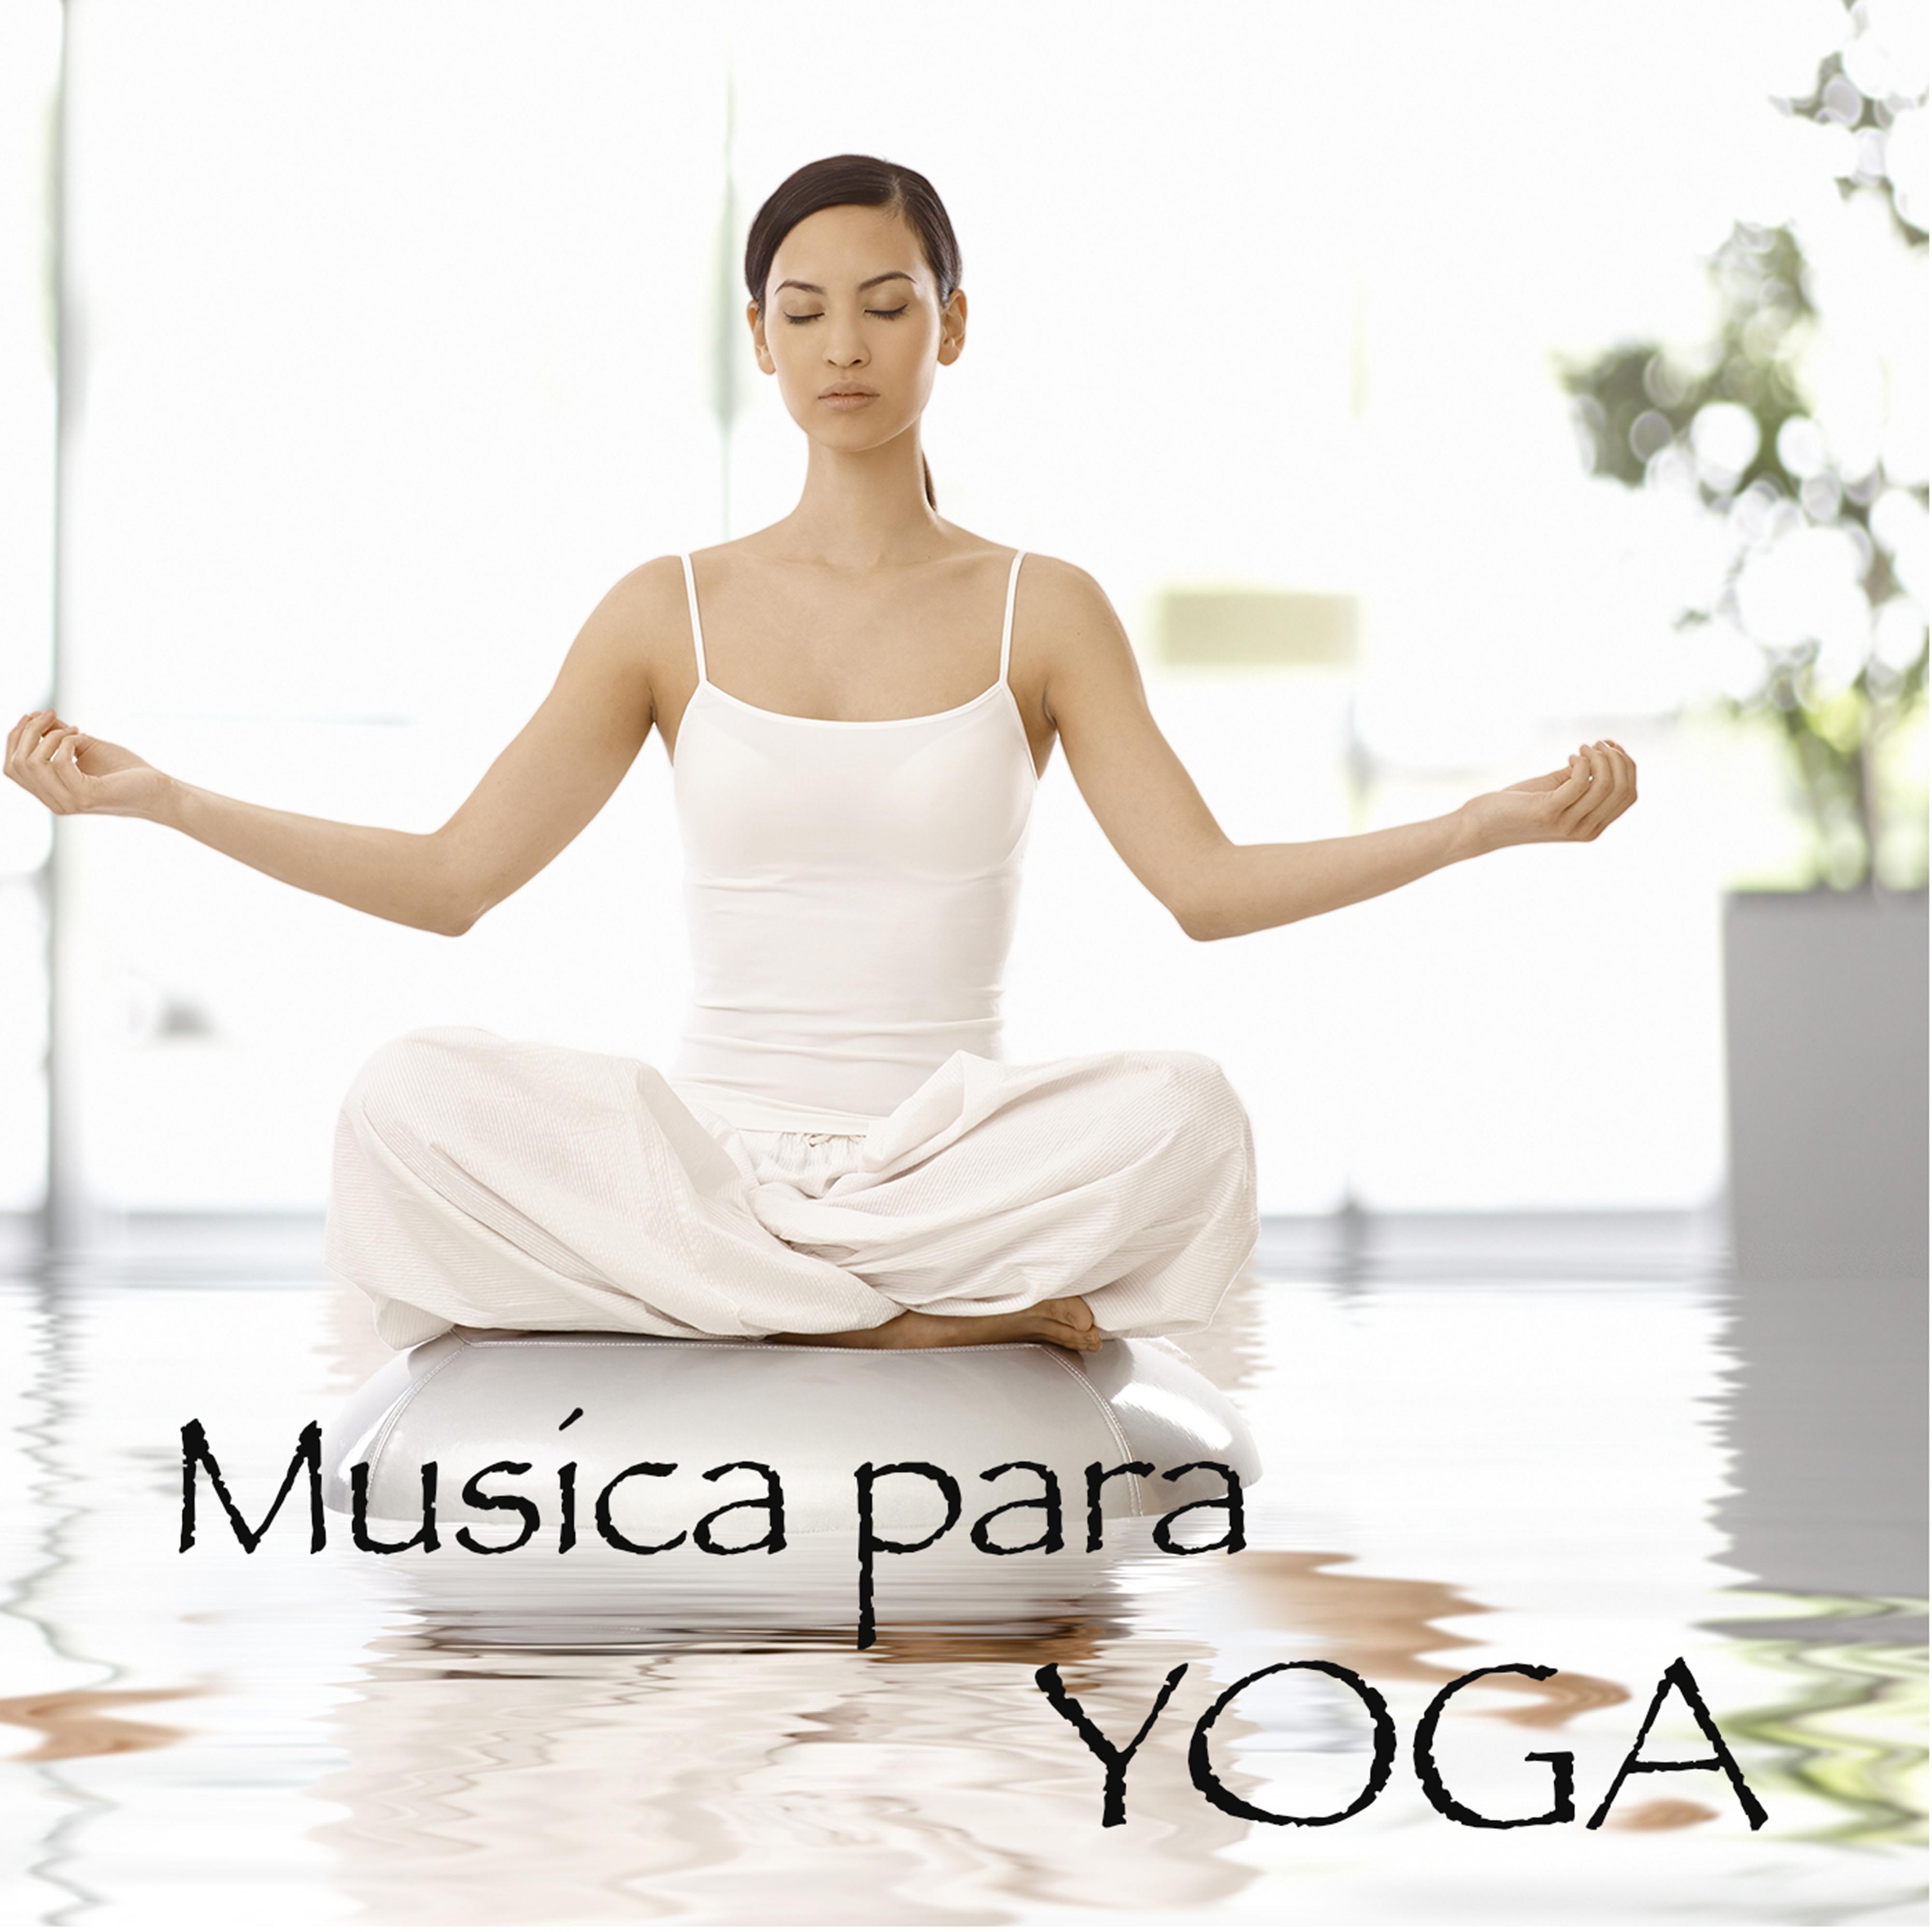 Musica para Yoga – Musica Relajante con Sonidos de la Naturaleza para Hacer Yoga, Saludo al Sol, Relajación con Savasana y Meditar